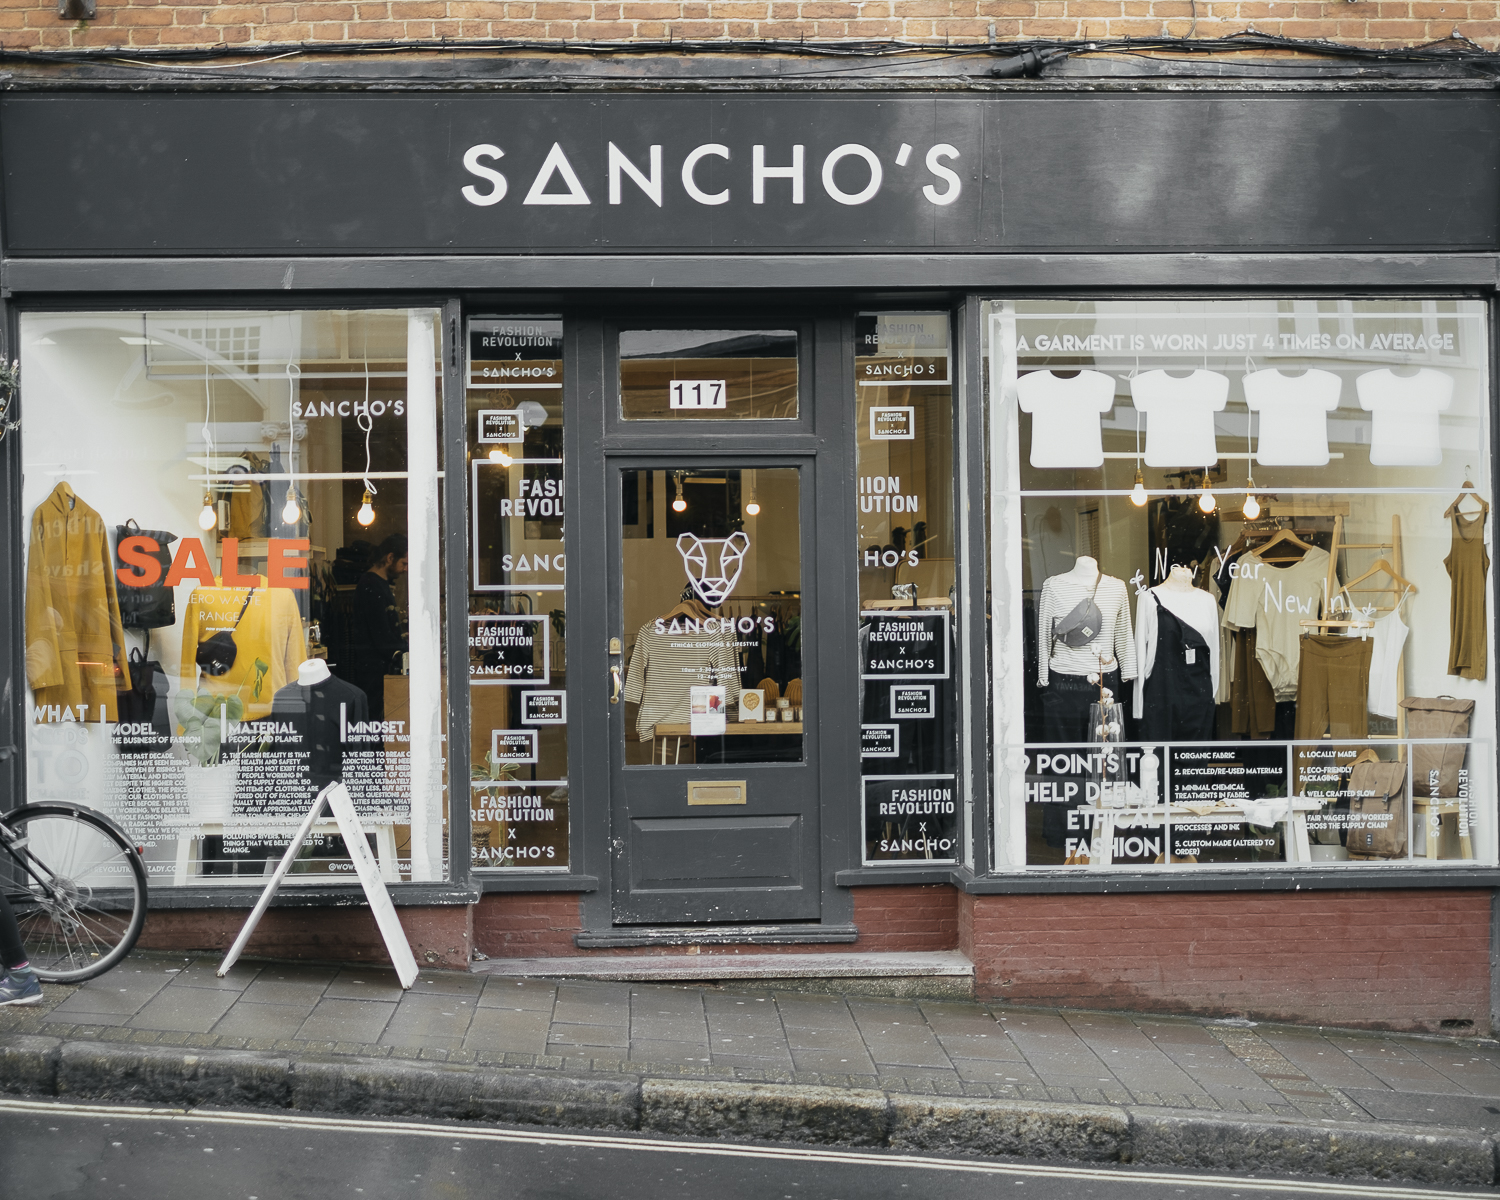 Sancho's